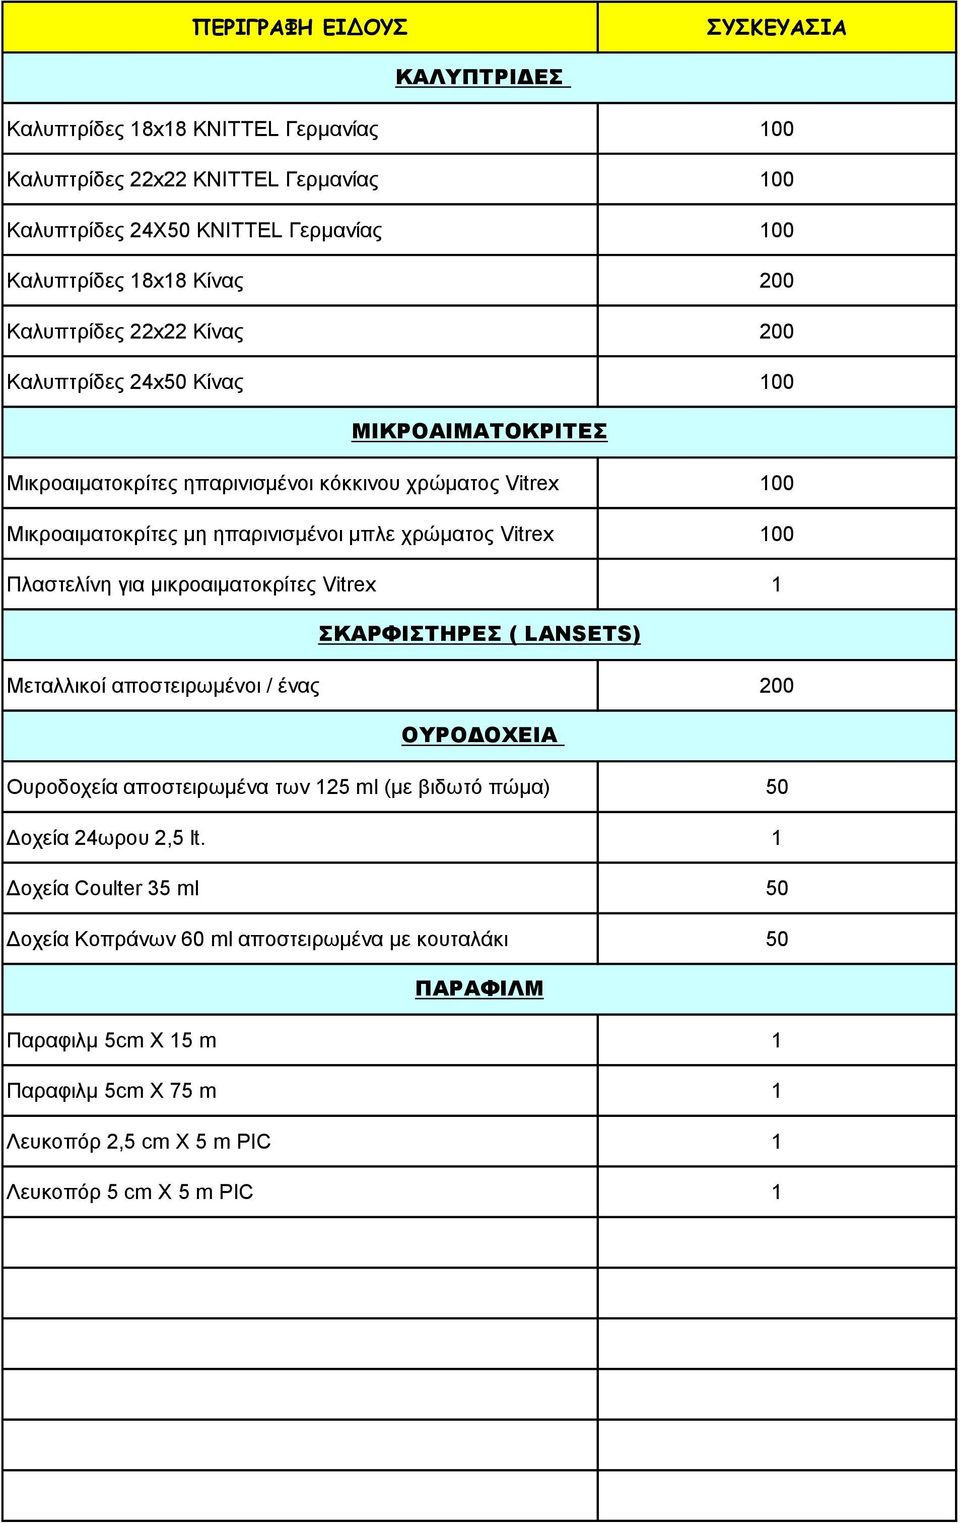 Πλαστελίνη για μικροαιματοκρίτες Vitrex ΣΚΑΡΦΙΣΤΗΡΕΣ ( LANSETS) Μεταλλικοί αποστειρωμένοι / ένας 200 OΥΡΟΔΟΧΕΙΑ Ουροδοχεία αποστειρωμένα των 25 ml (με βιδωτό πώμα) 50 Δοχεία